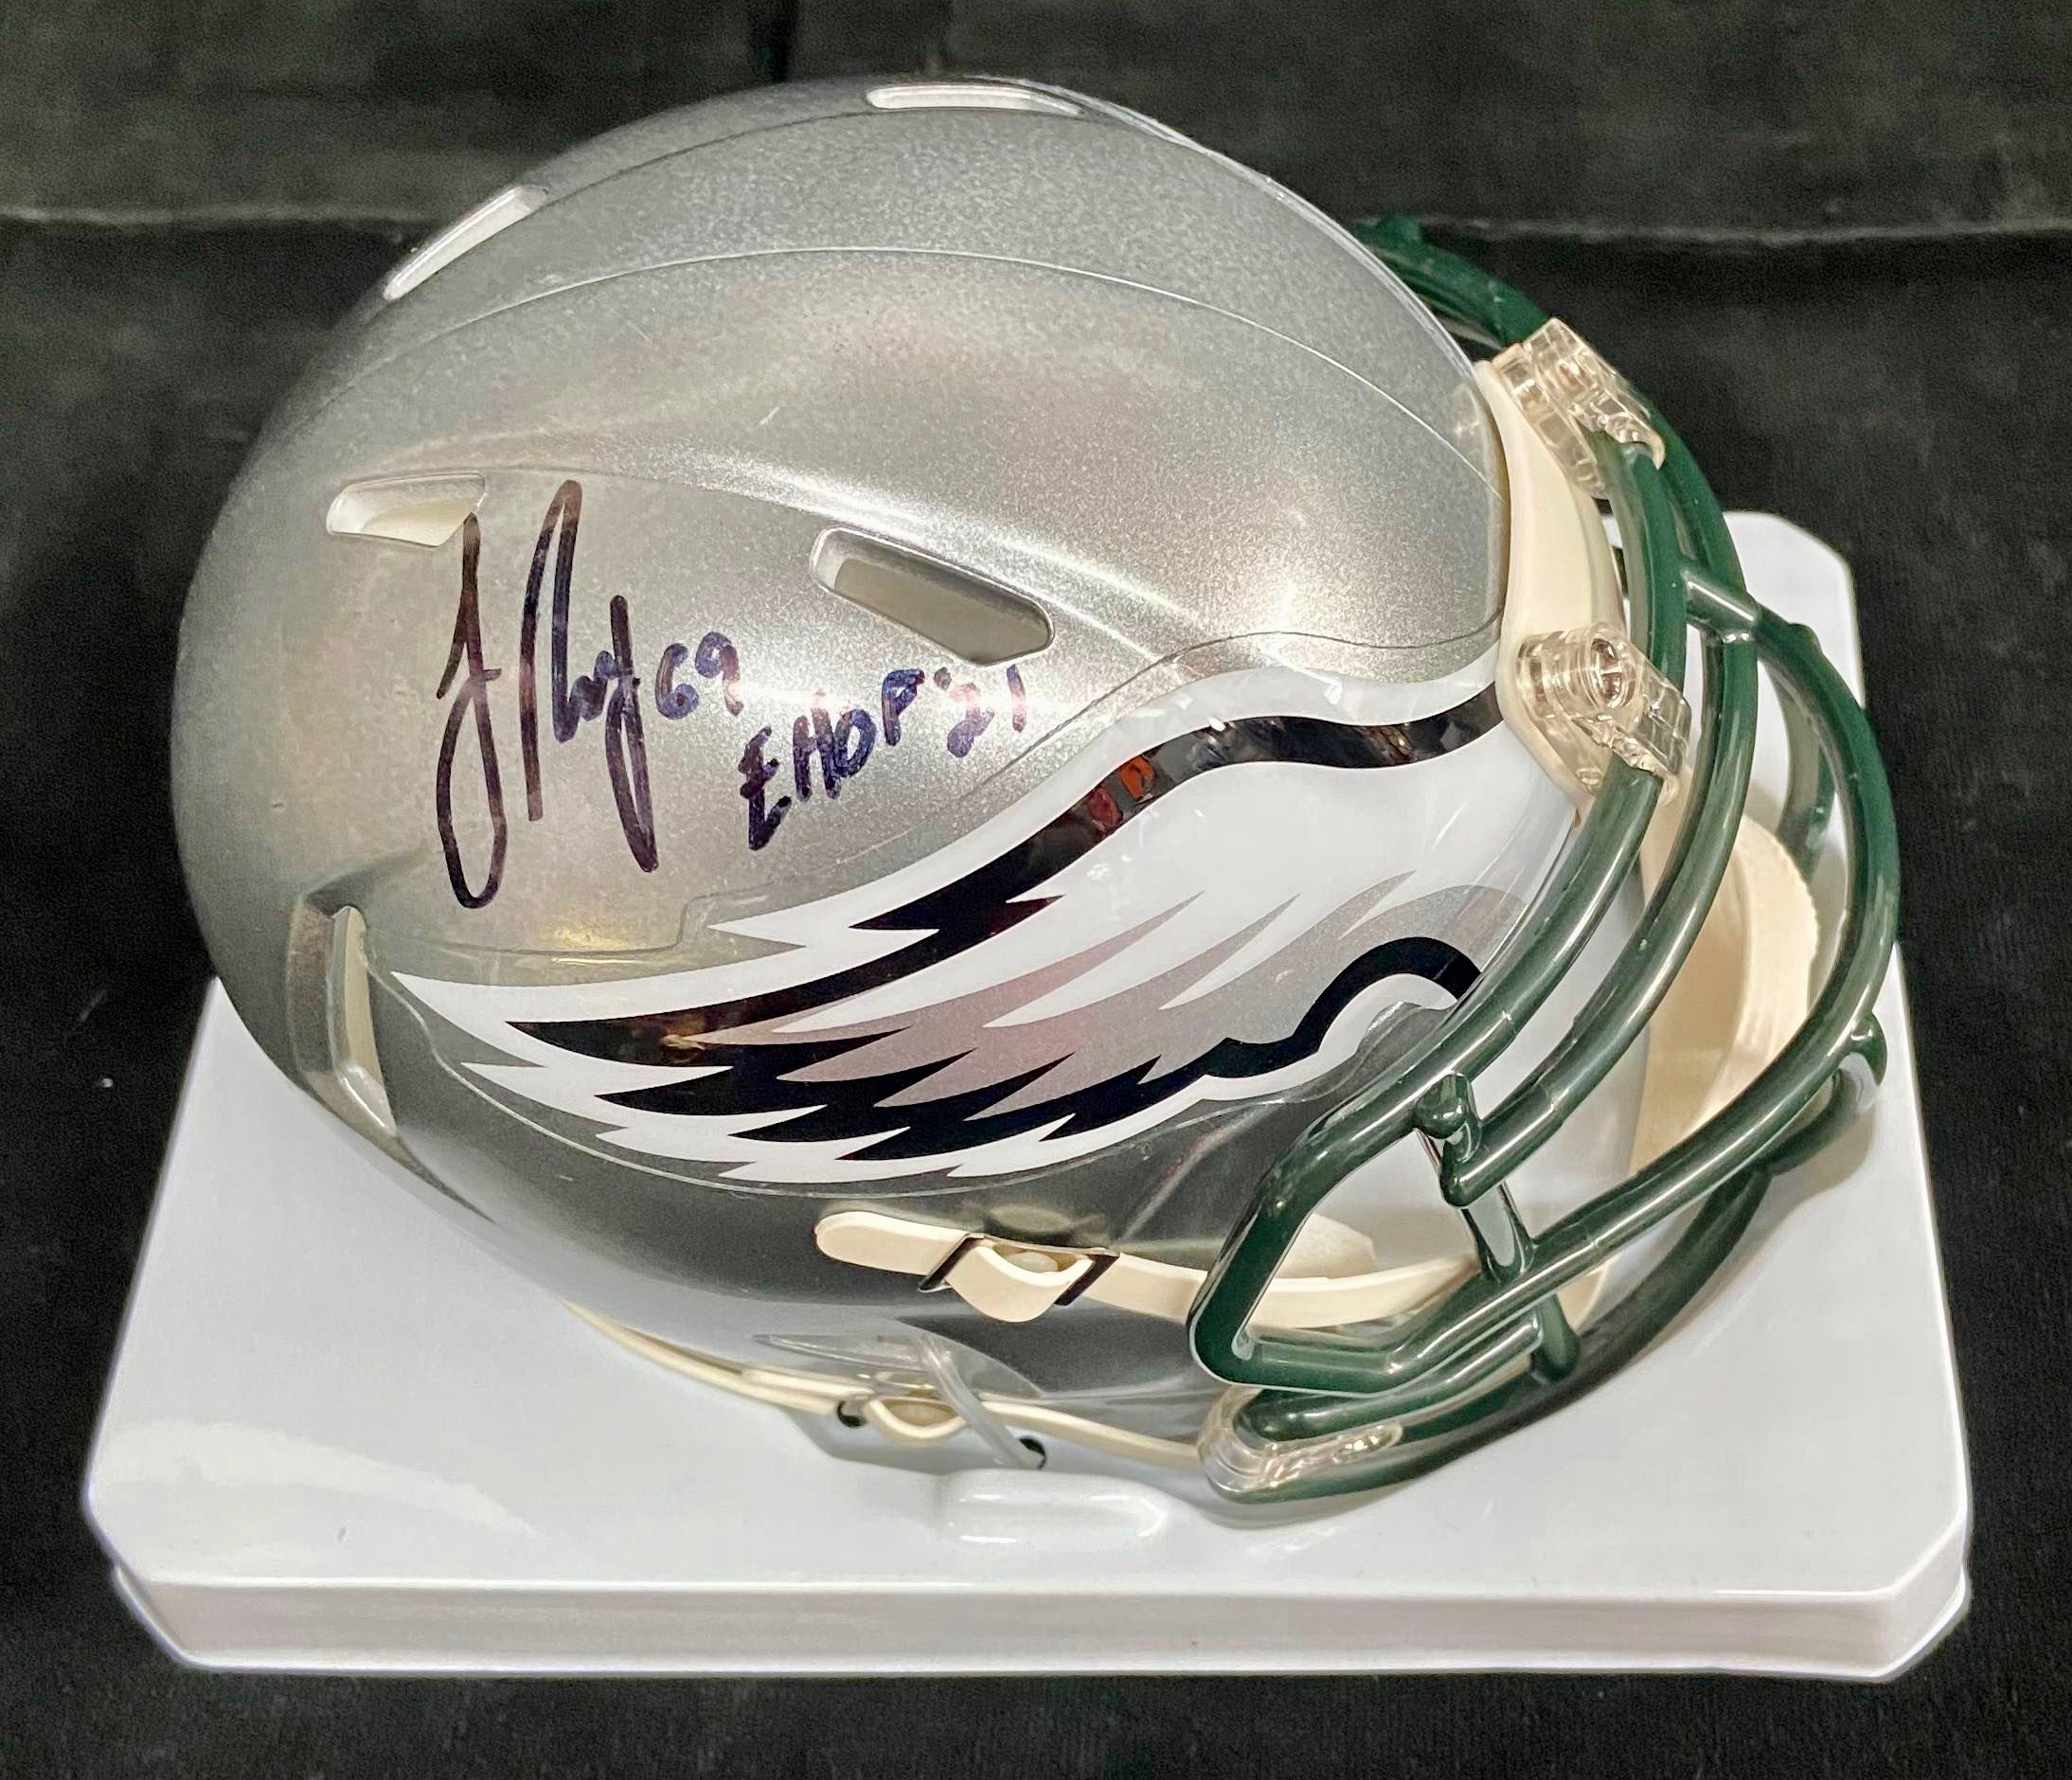 Philadelphia Eagles Jon Runyan Autographed Mini Helmet